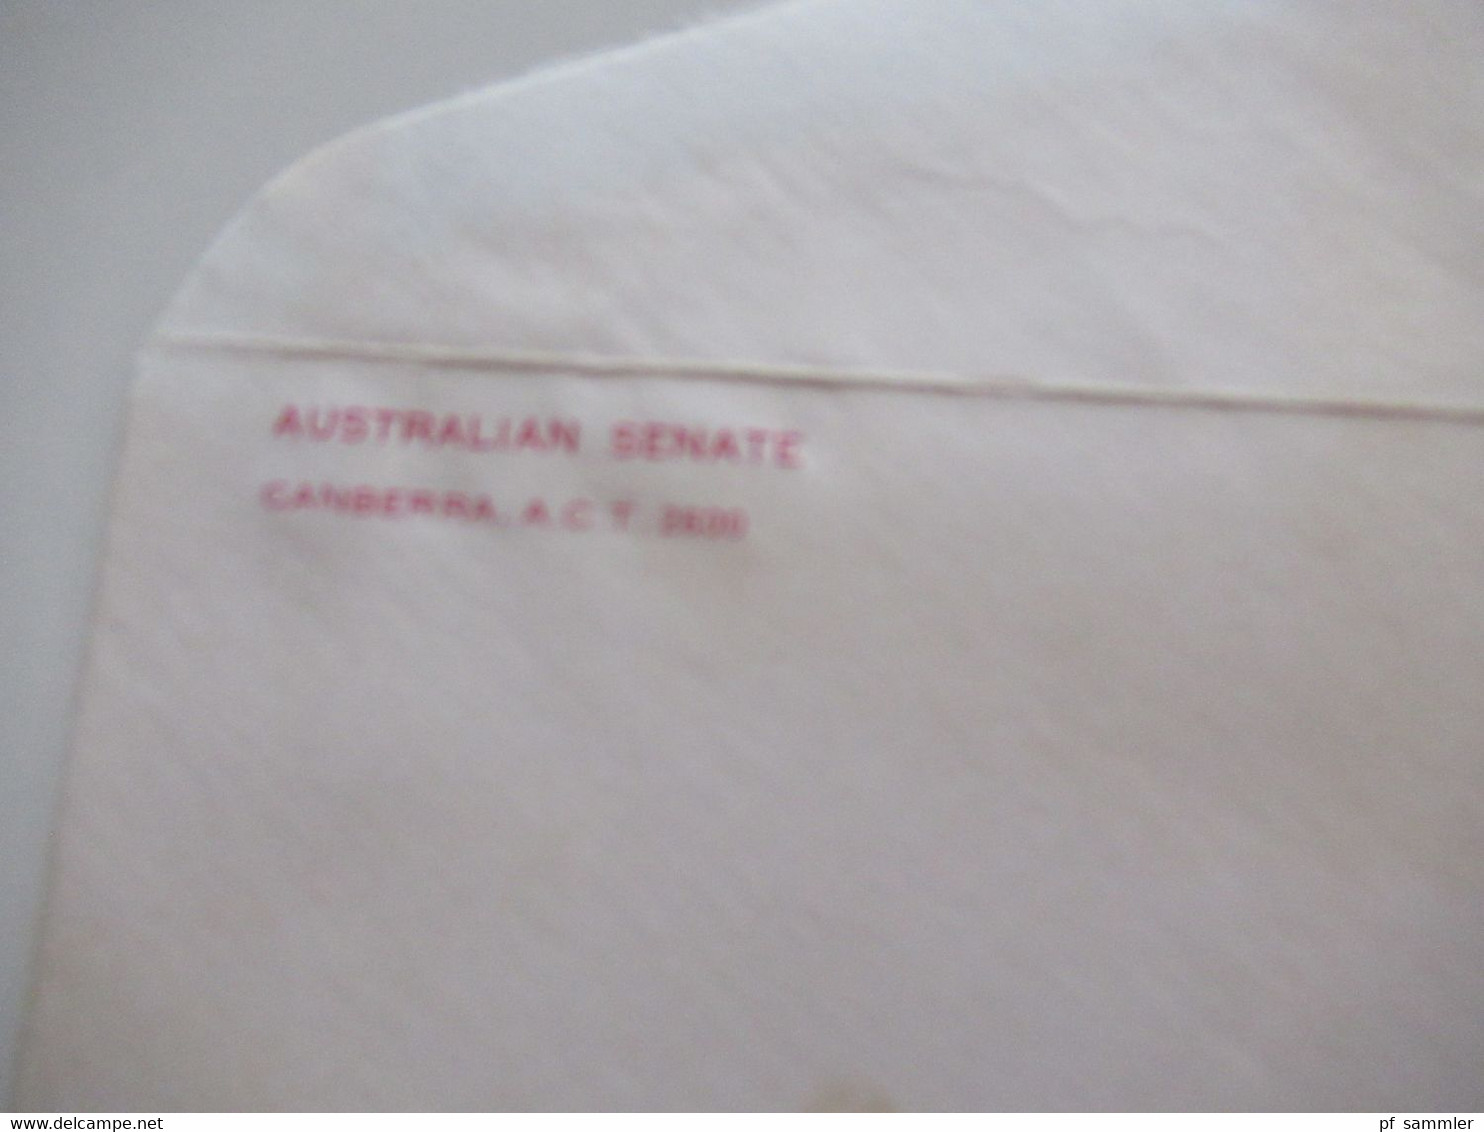 1980 Umschlag Australian Senate (Regierung) Mit Inhalt U. Original Unterschrift K.O. Bradshaw Acting Clerk Of The Senate - Briefe U. Dokumente